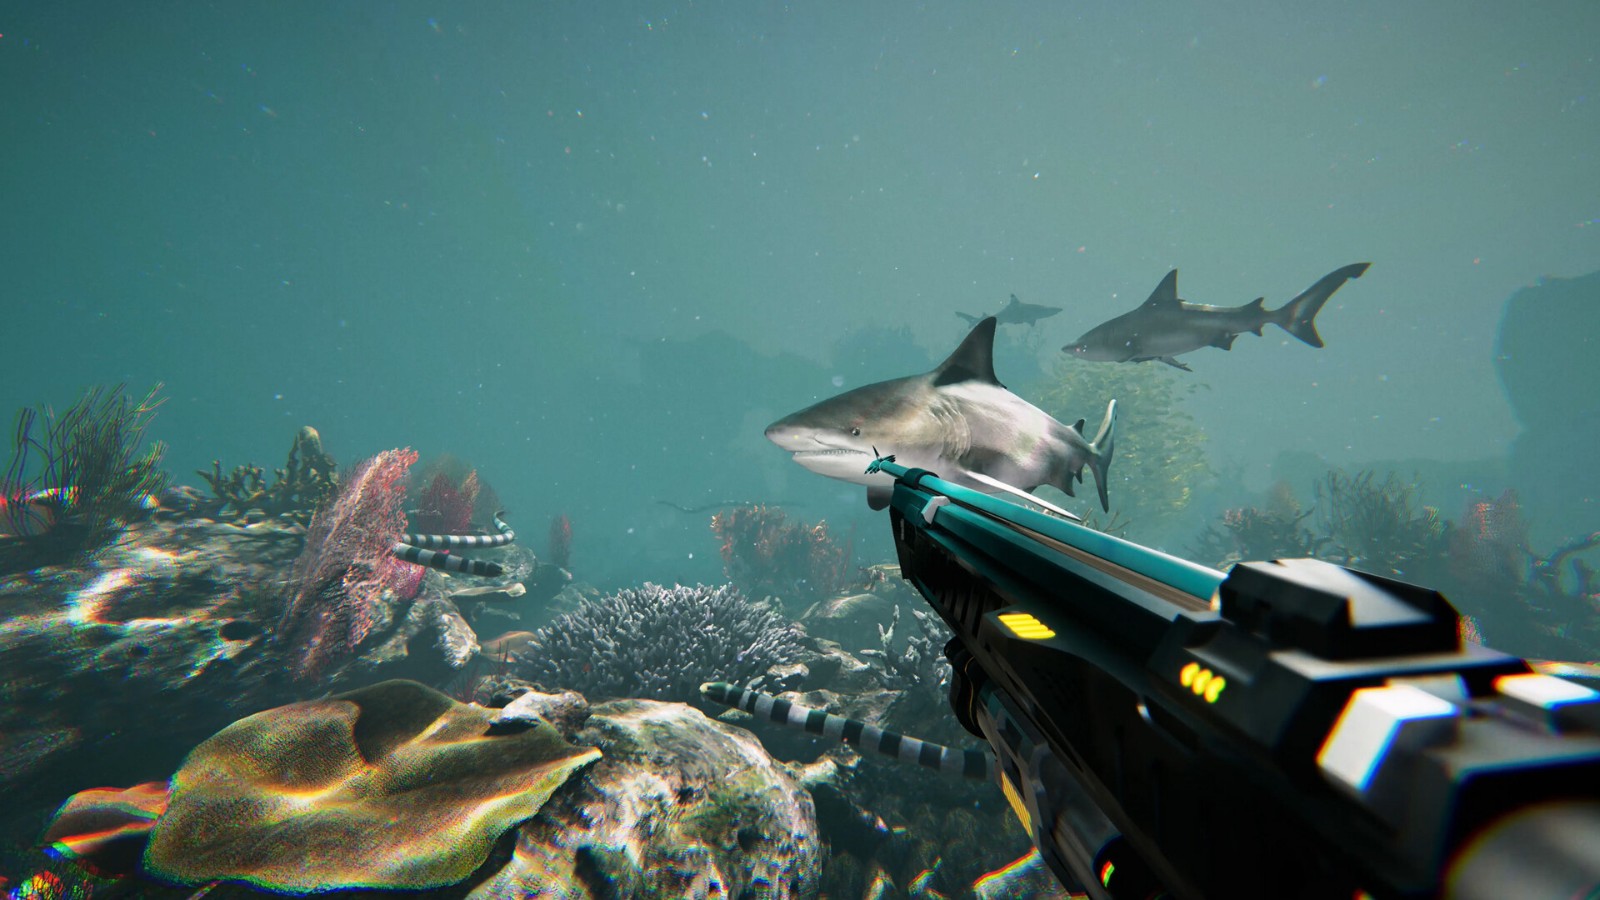 恐怖水下射击游戏《死在水中2》Steam多半好评